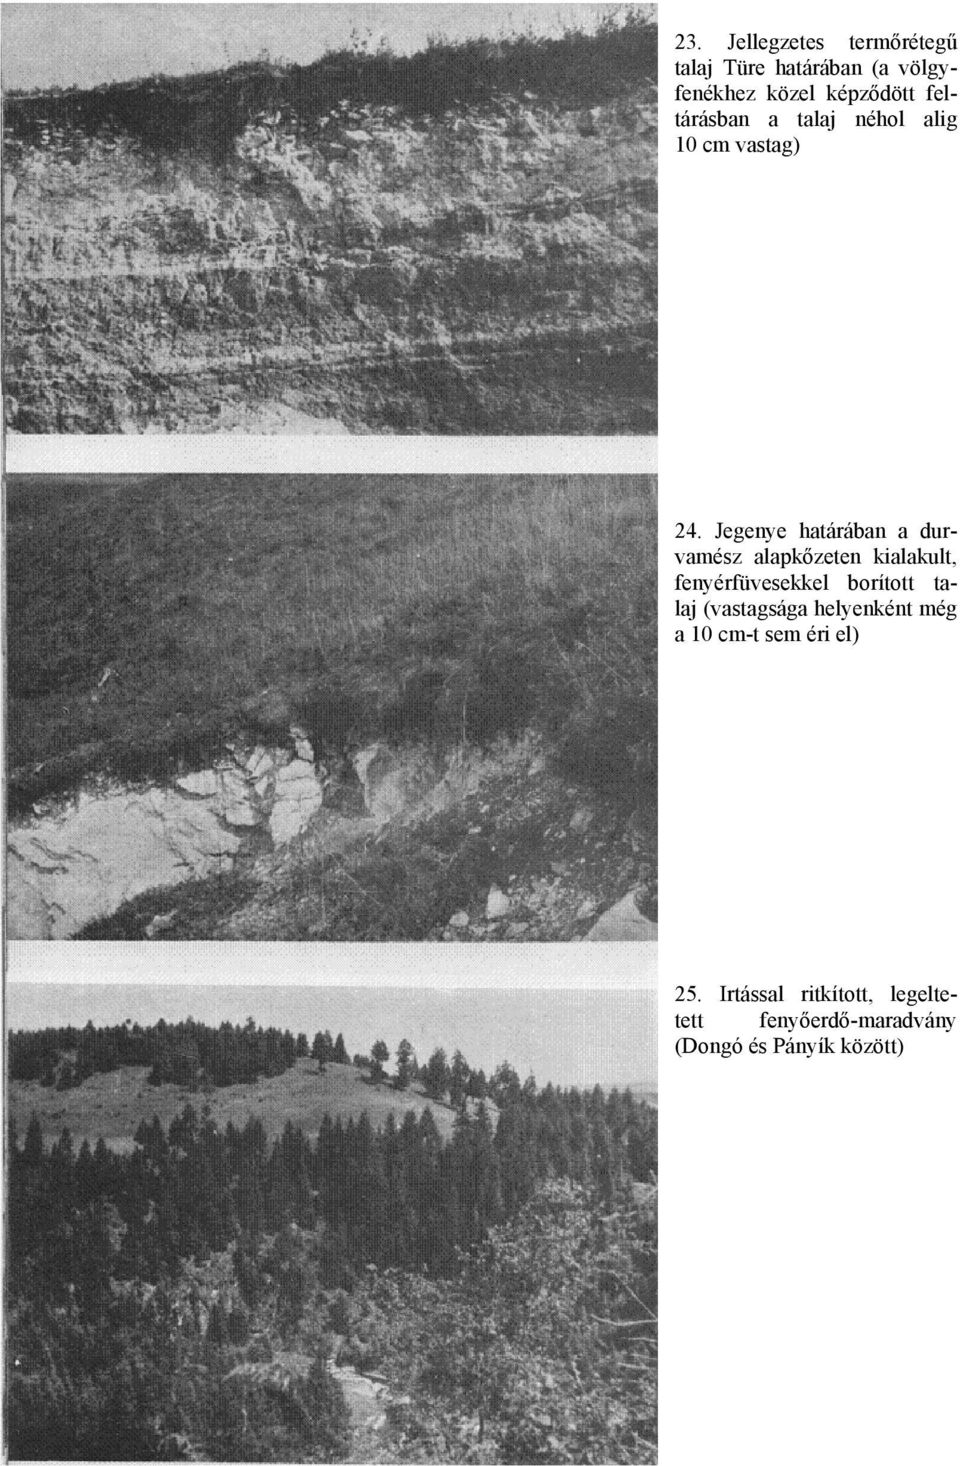 Jegenye határában a durvamész alapkőzeten kialakult, fenyérfüvesekkel borított talaj